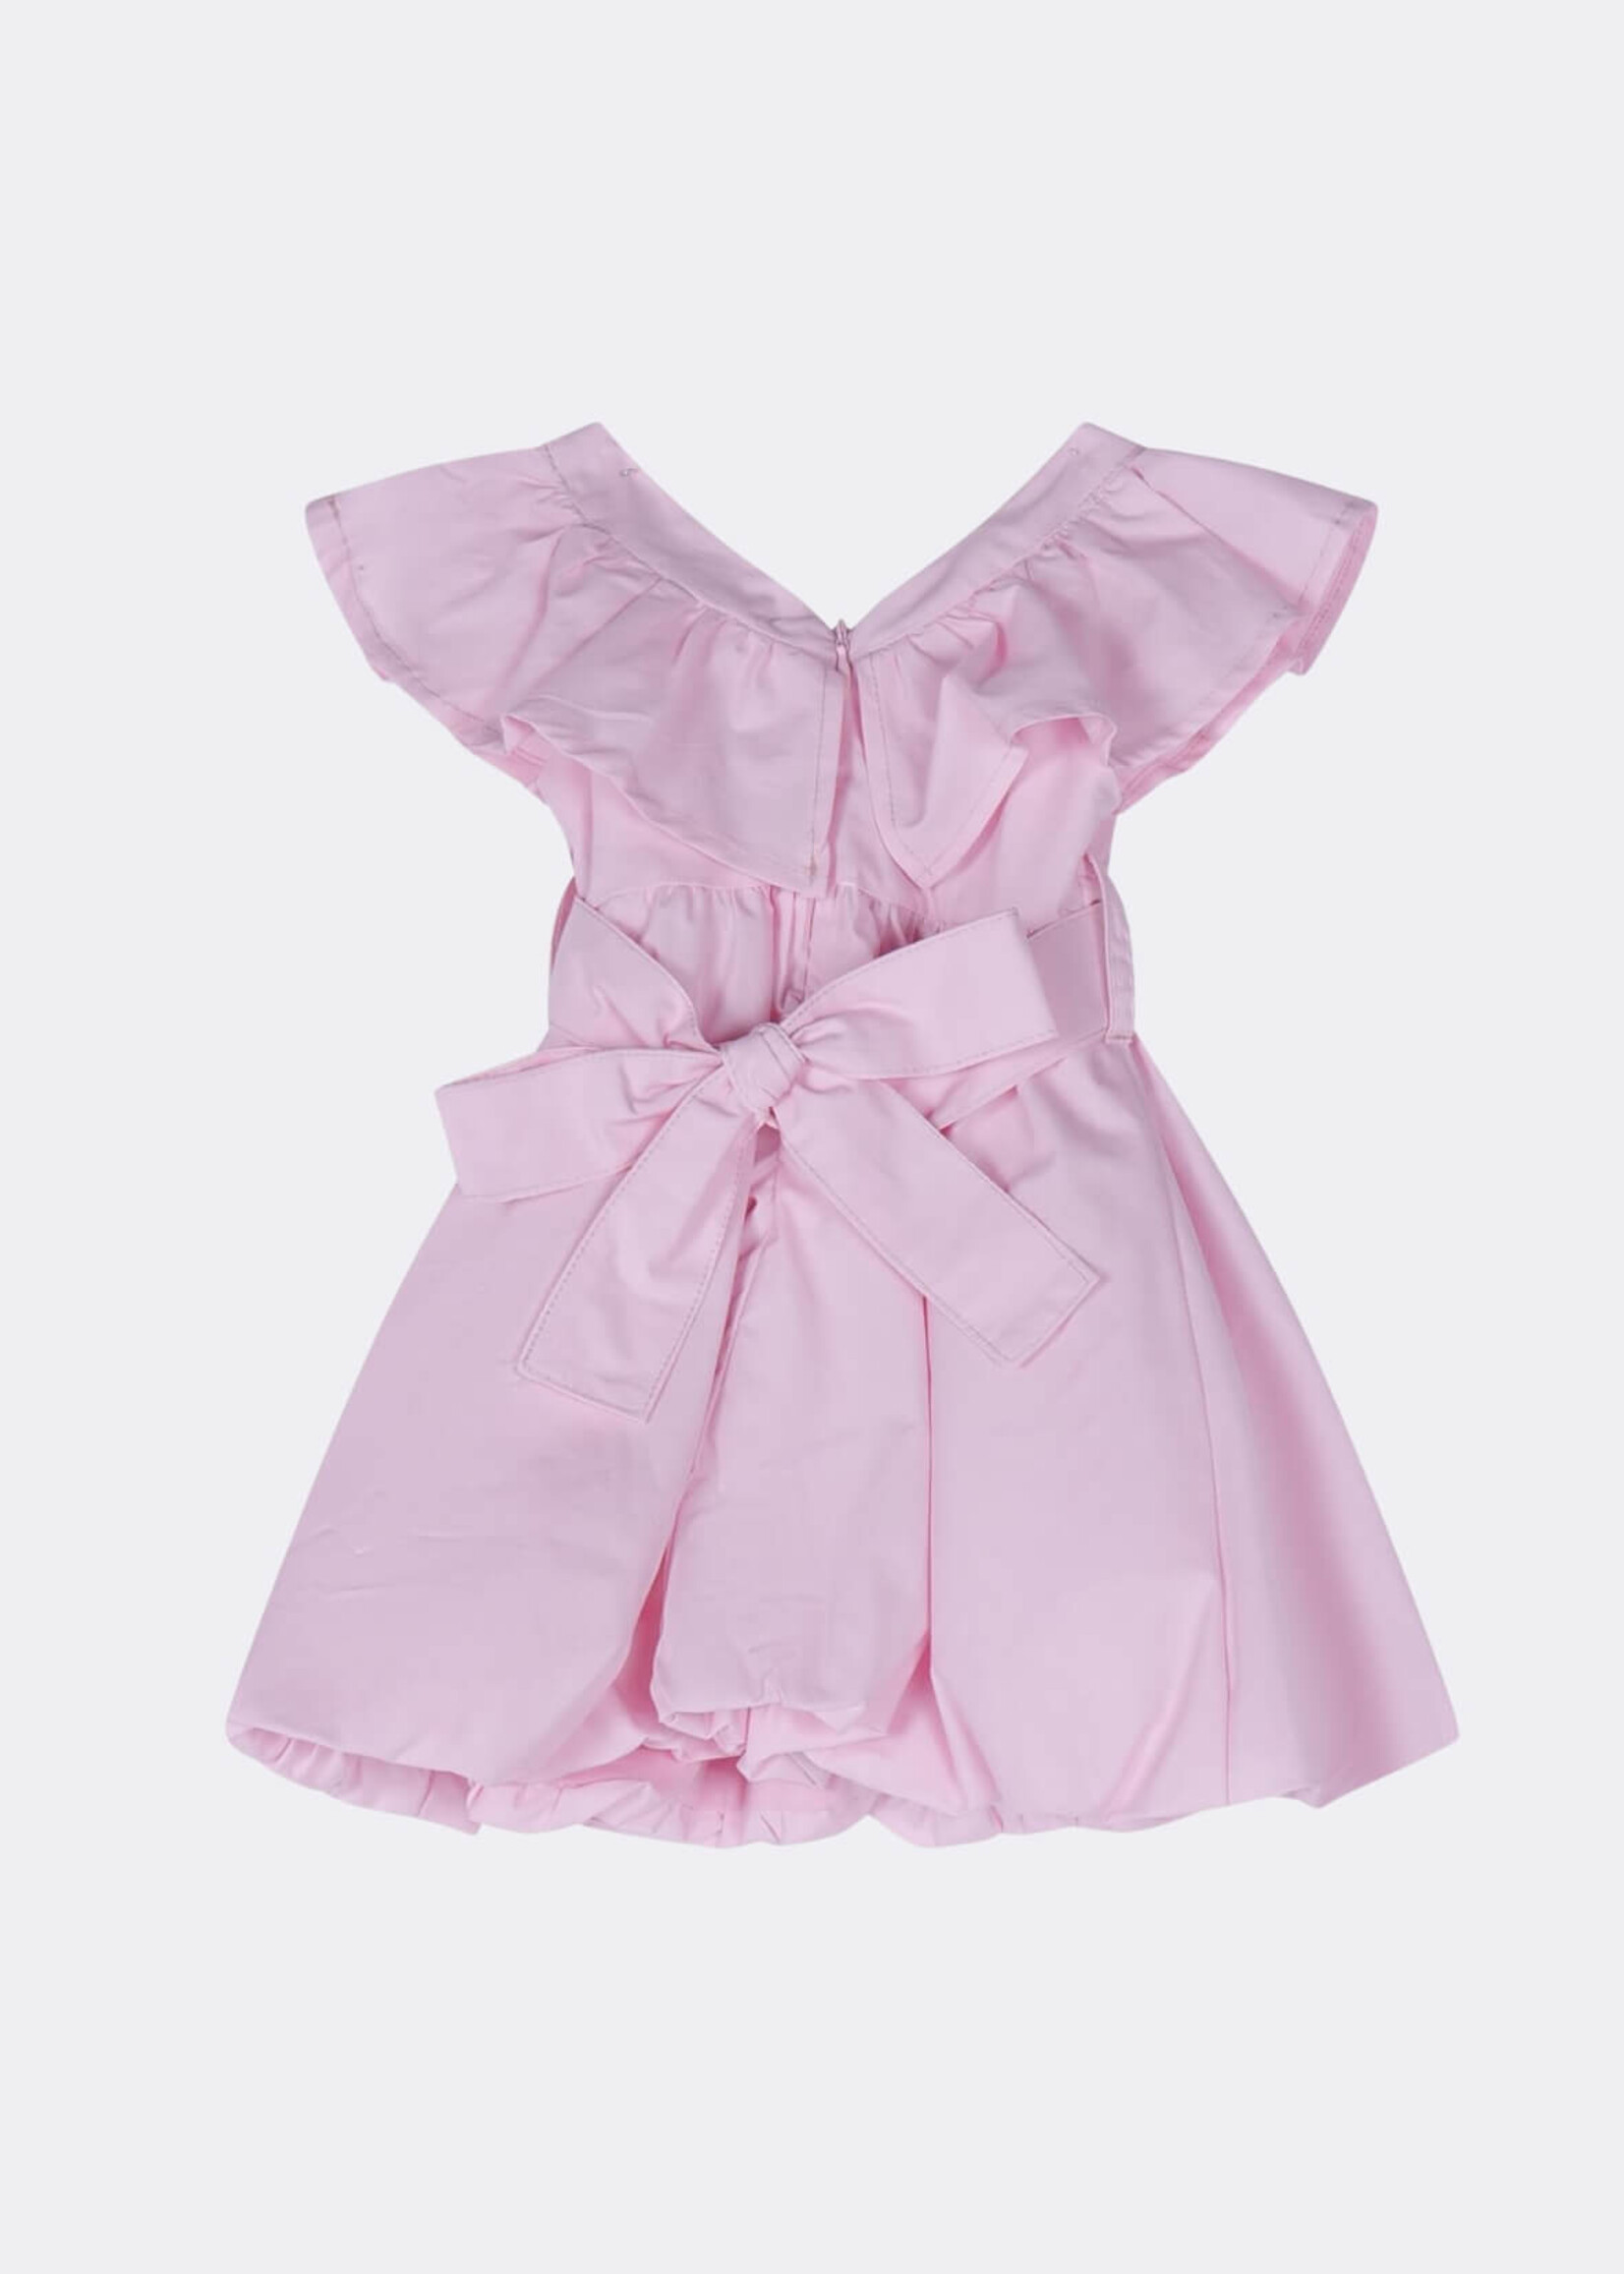 Fun & Fun Pink Dress Baby